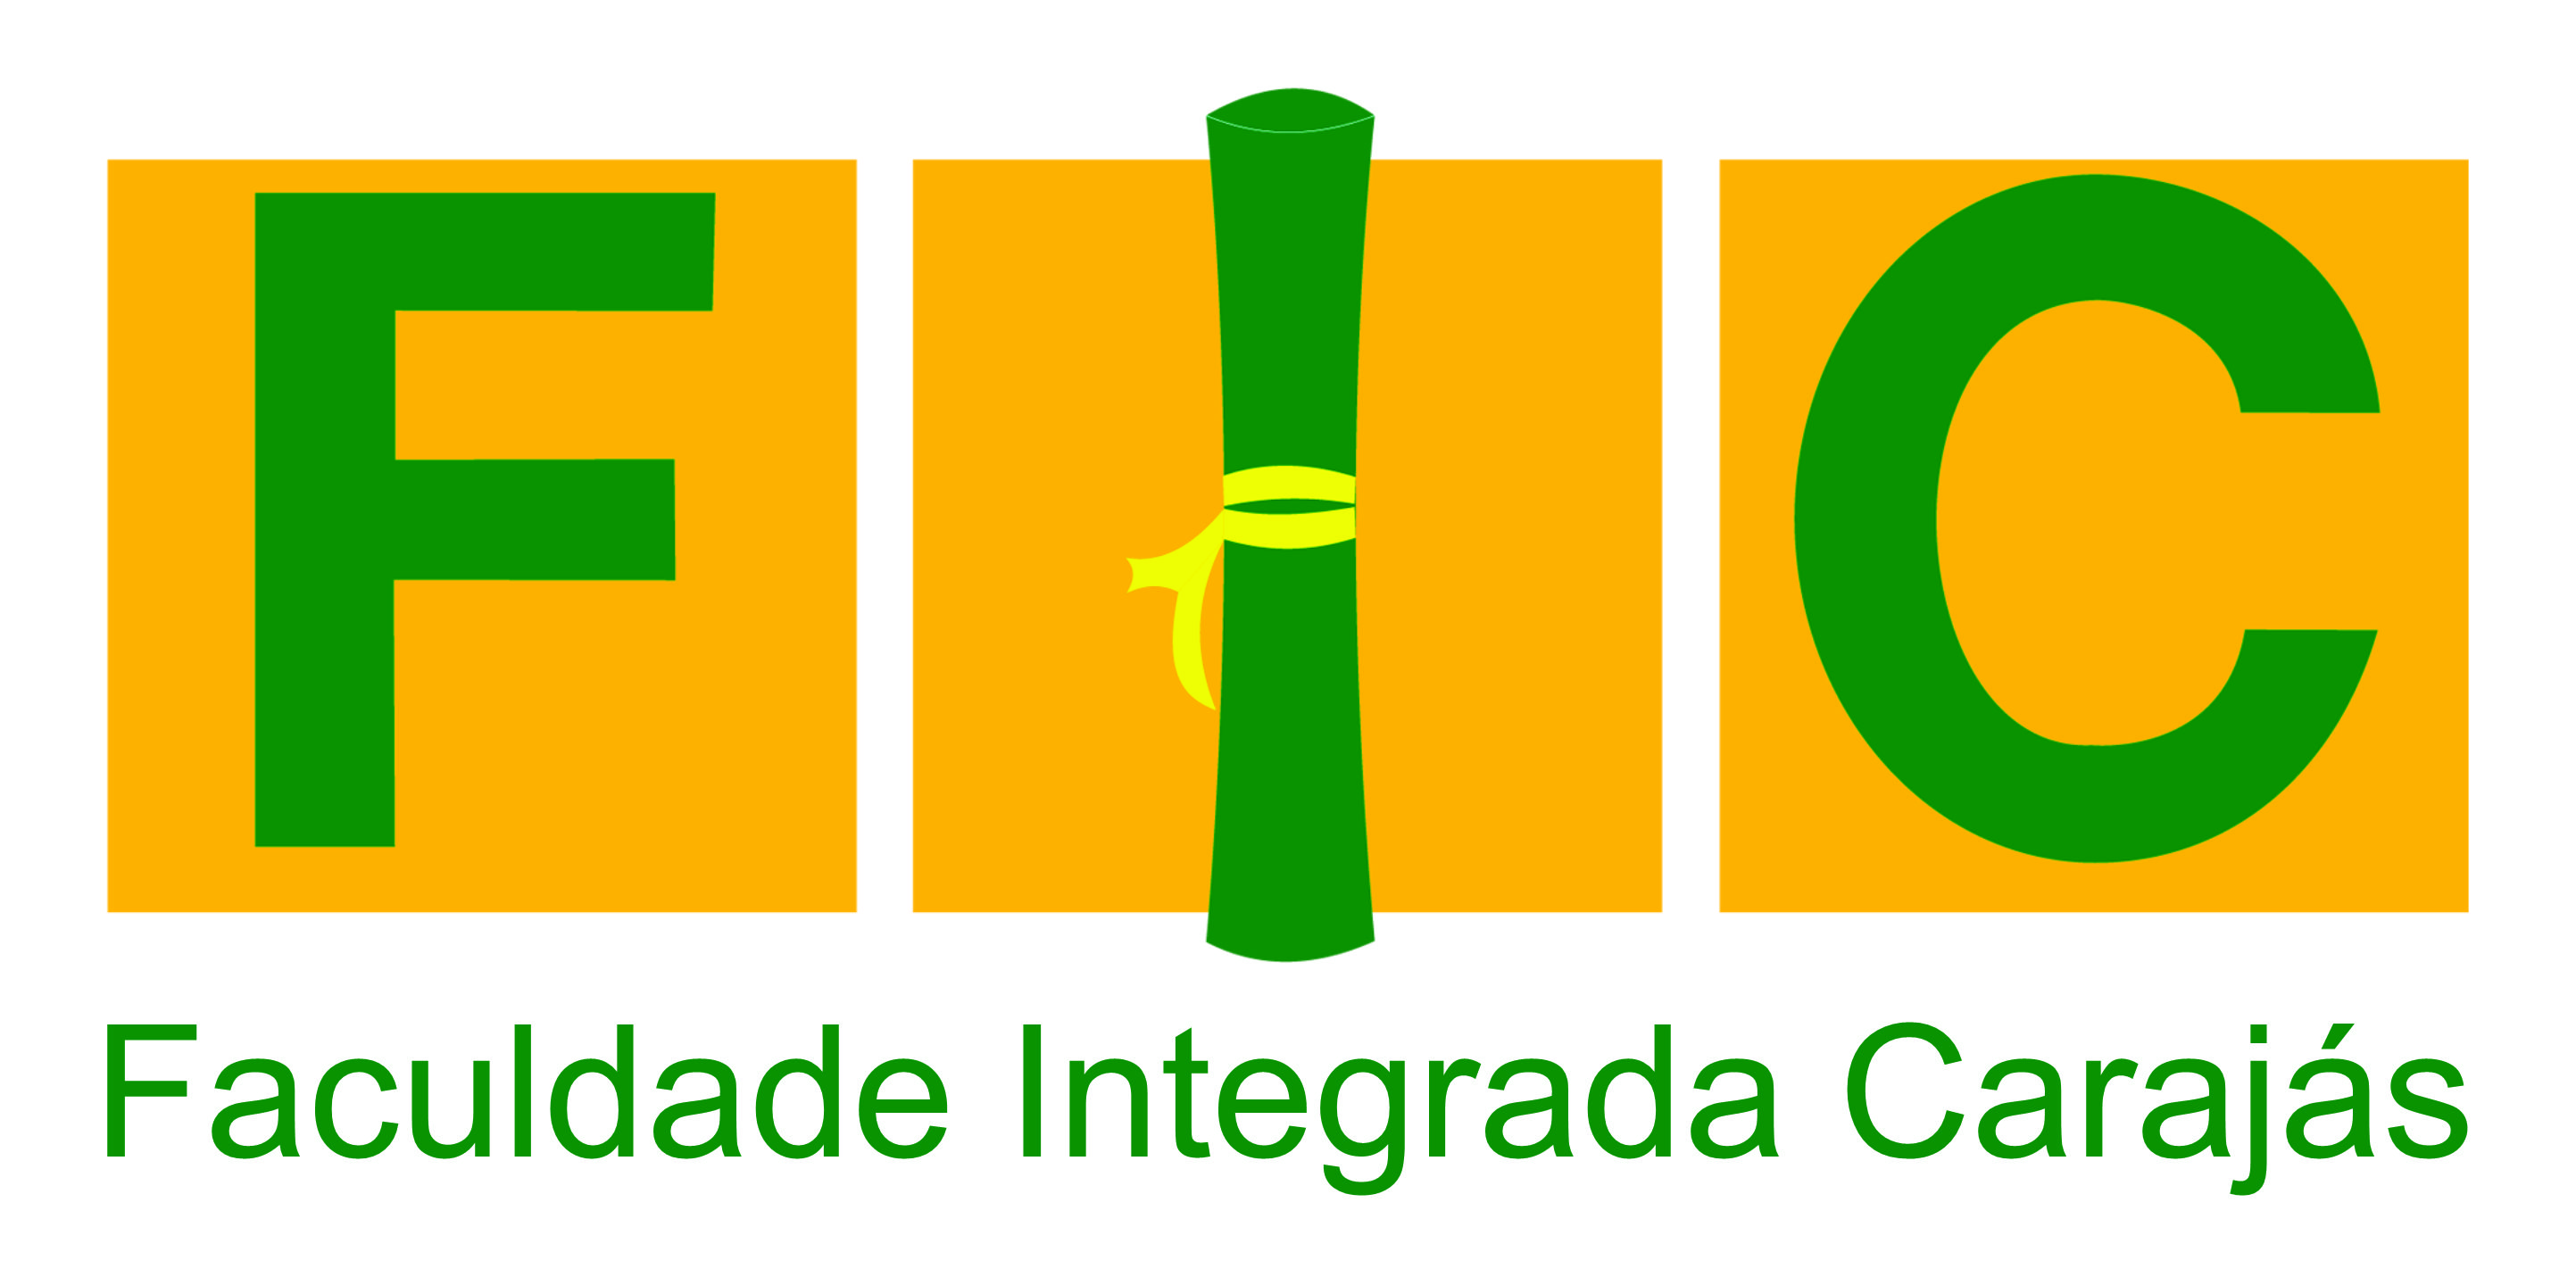 FIC Redenção - Faculdade Integrada Carajás